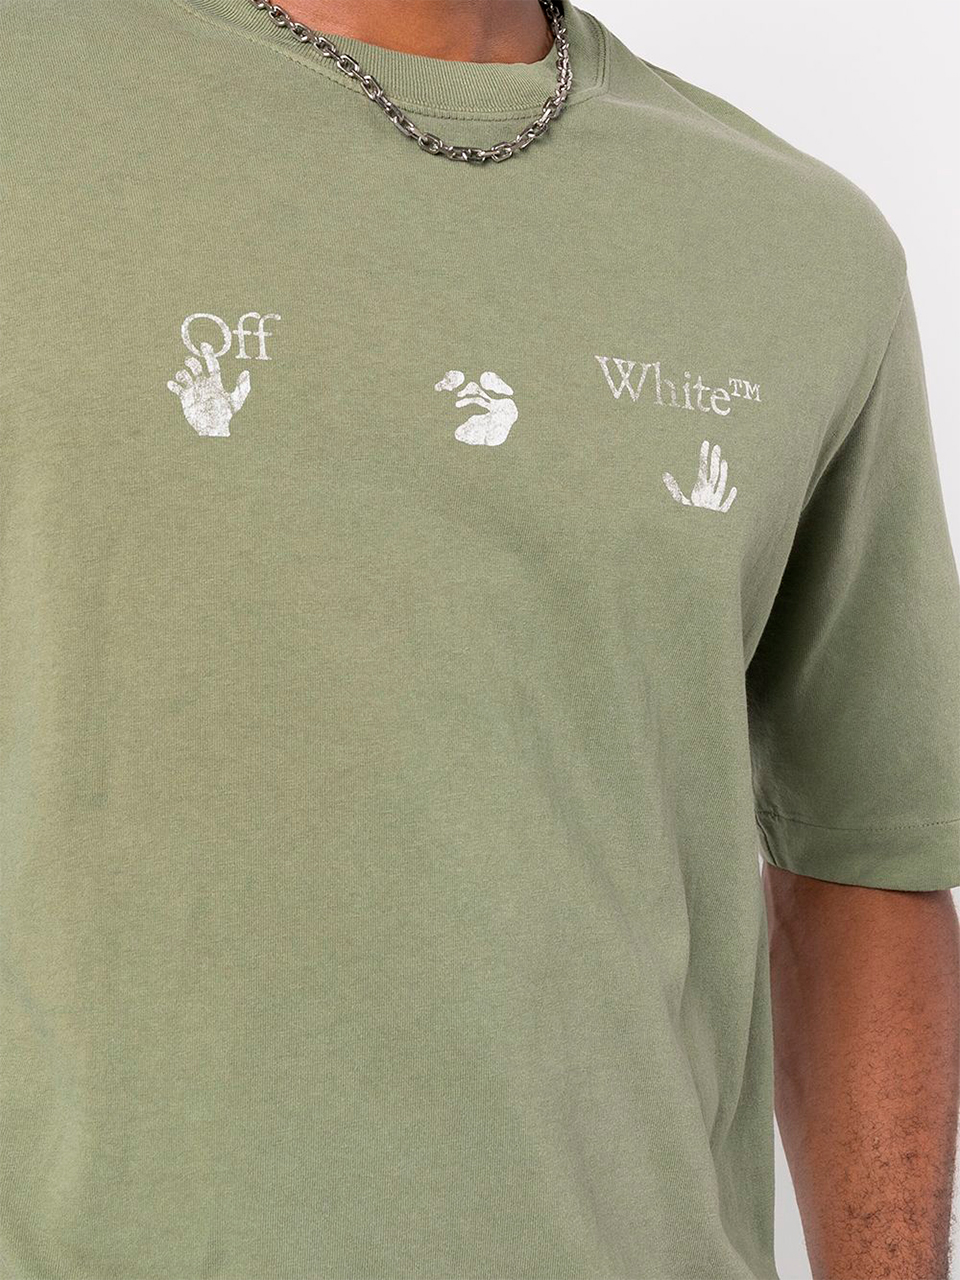 Imagem de: Camiseta Off-White Verde Musgo com Logo Hand